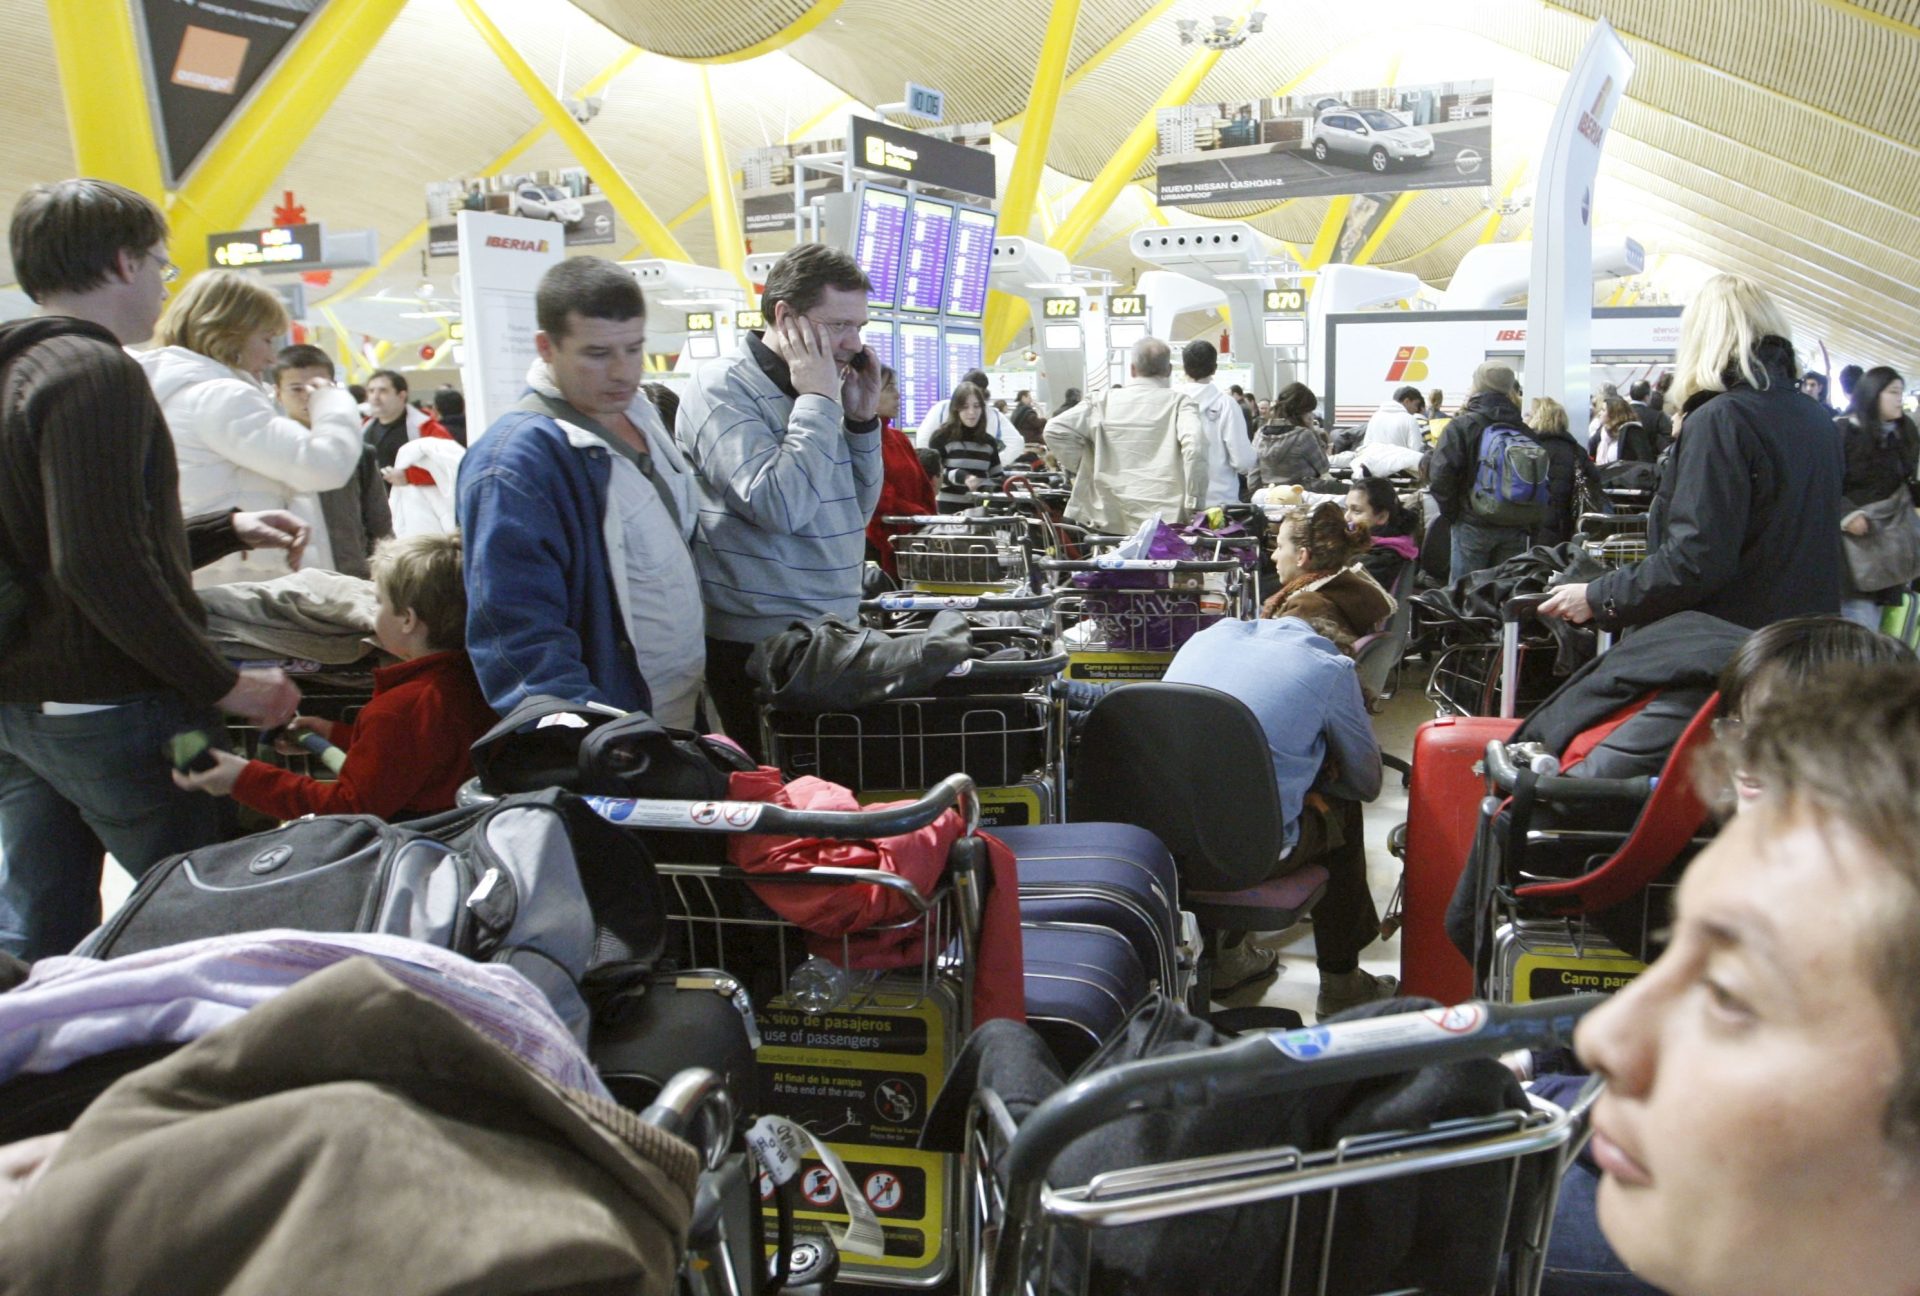 Pasajeros esperan la salida de sus aviones. Foto: Efetur/Manuel H. de León (Archivo)